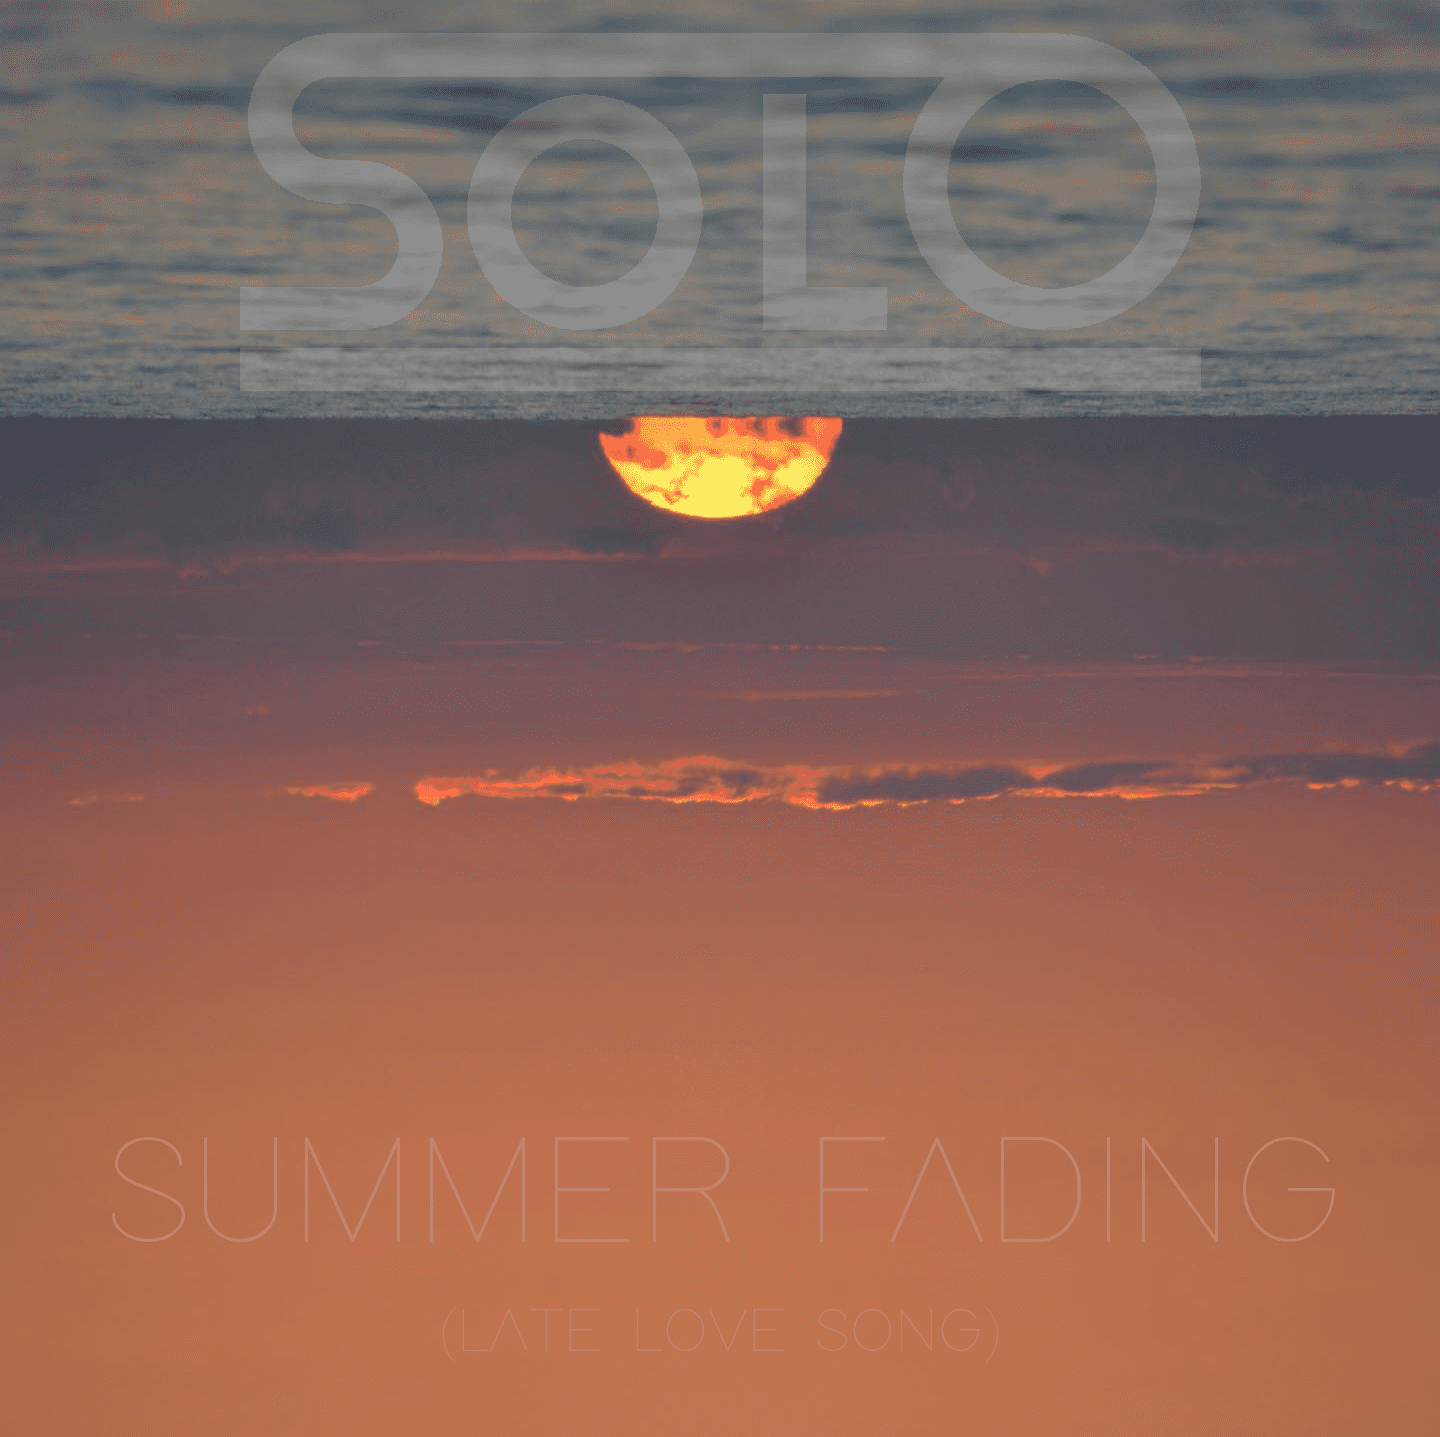 Summer fading, l'ultimo singolo di Solo